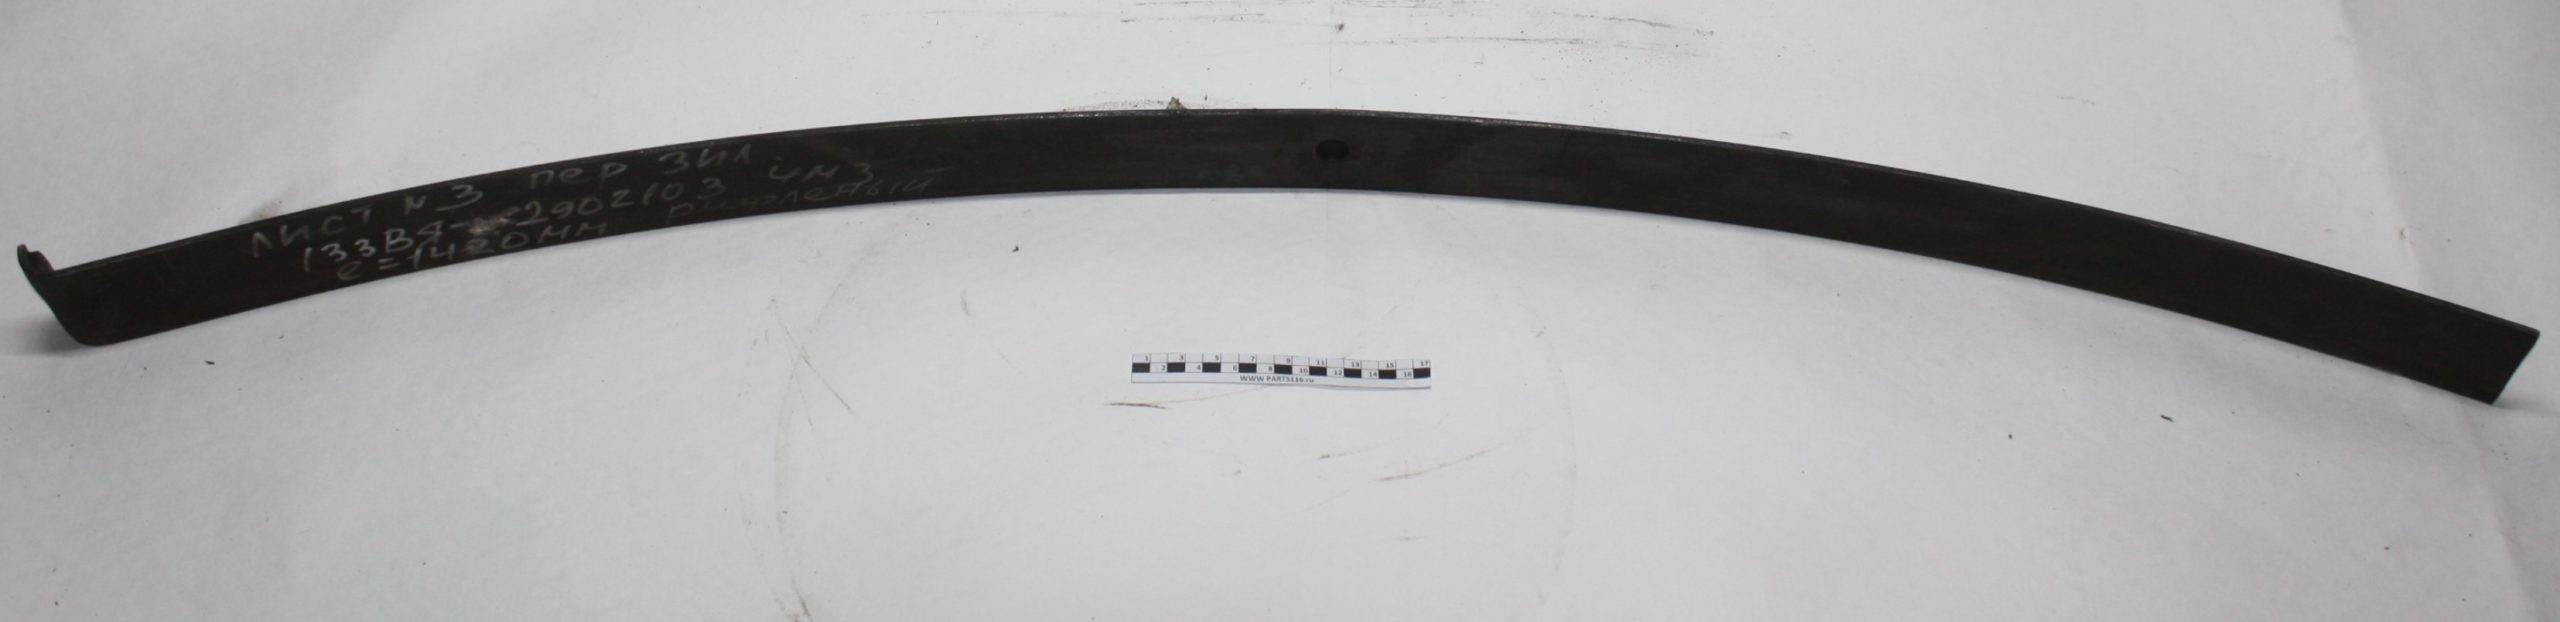 Лист рессоры №3 передней L=1420 мм рифленый с одной бобышкой на Зил ЧМЗ (133ВЯ-2902103)